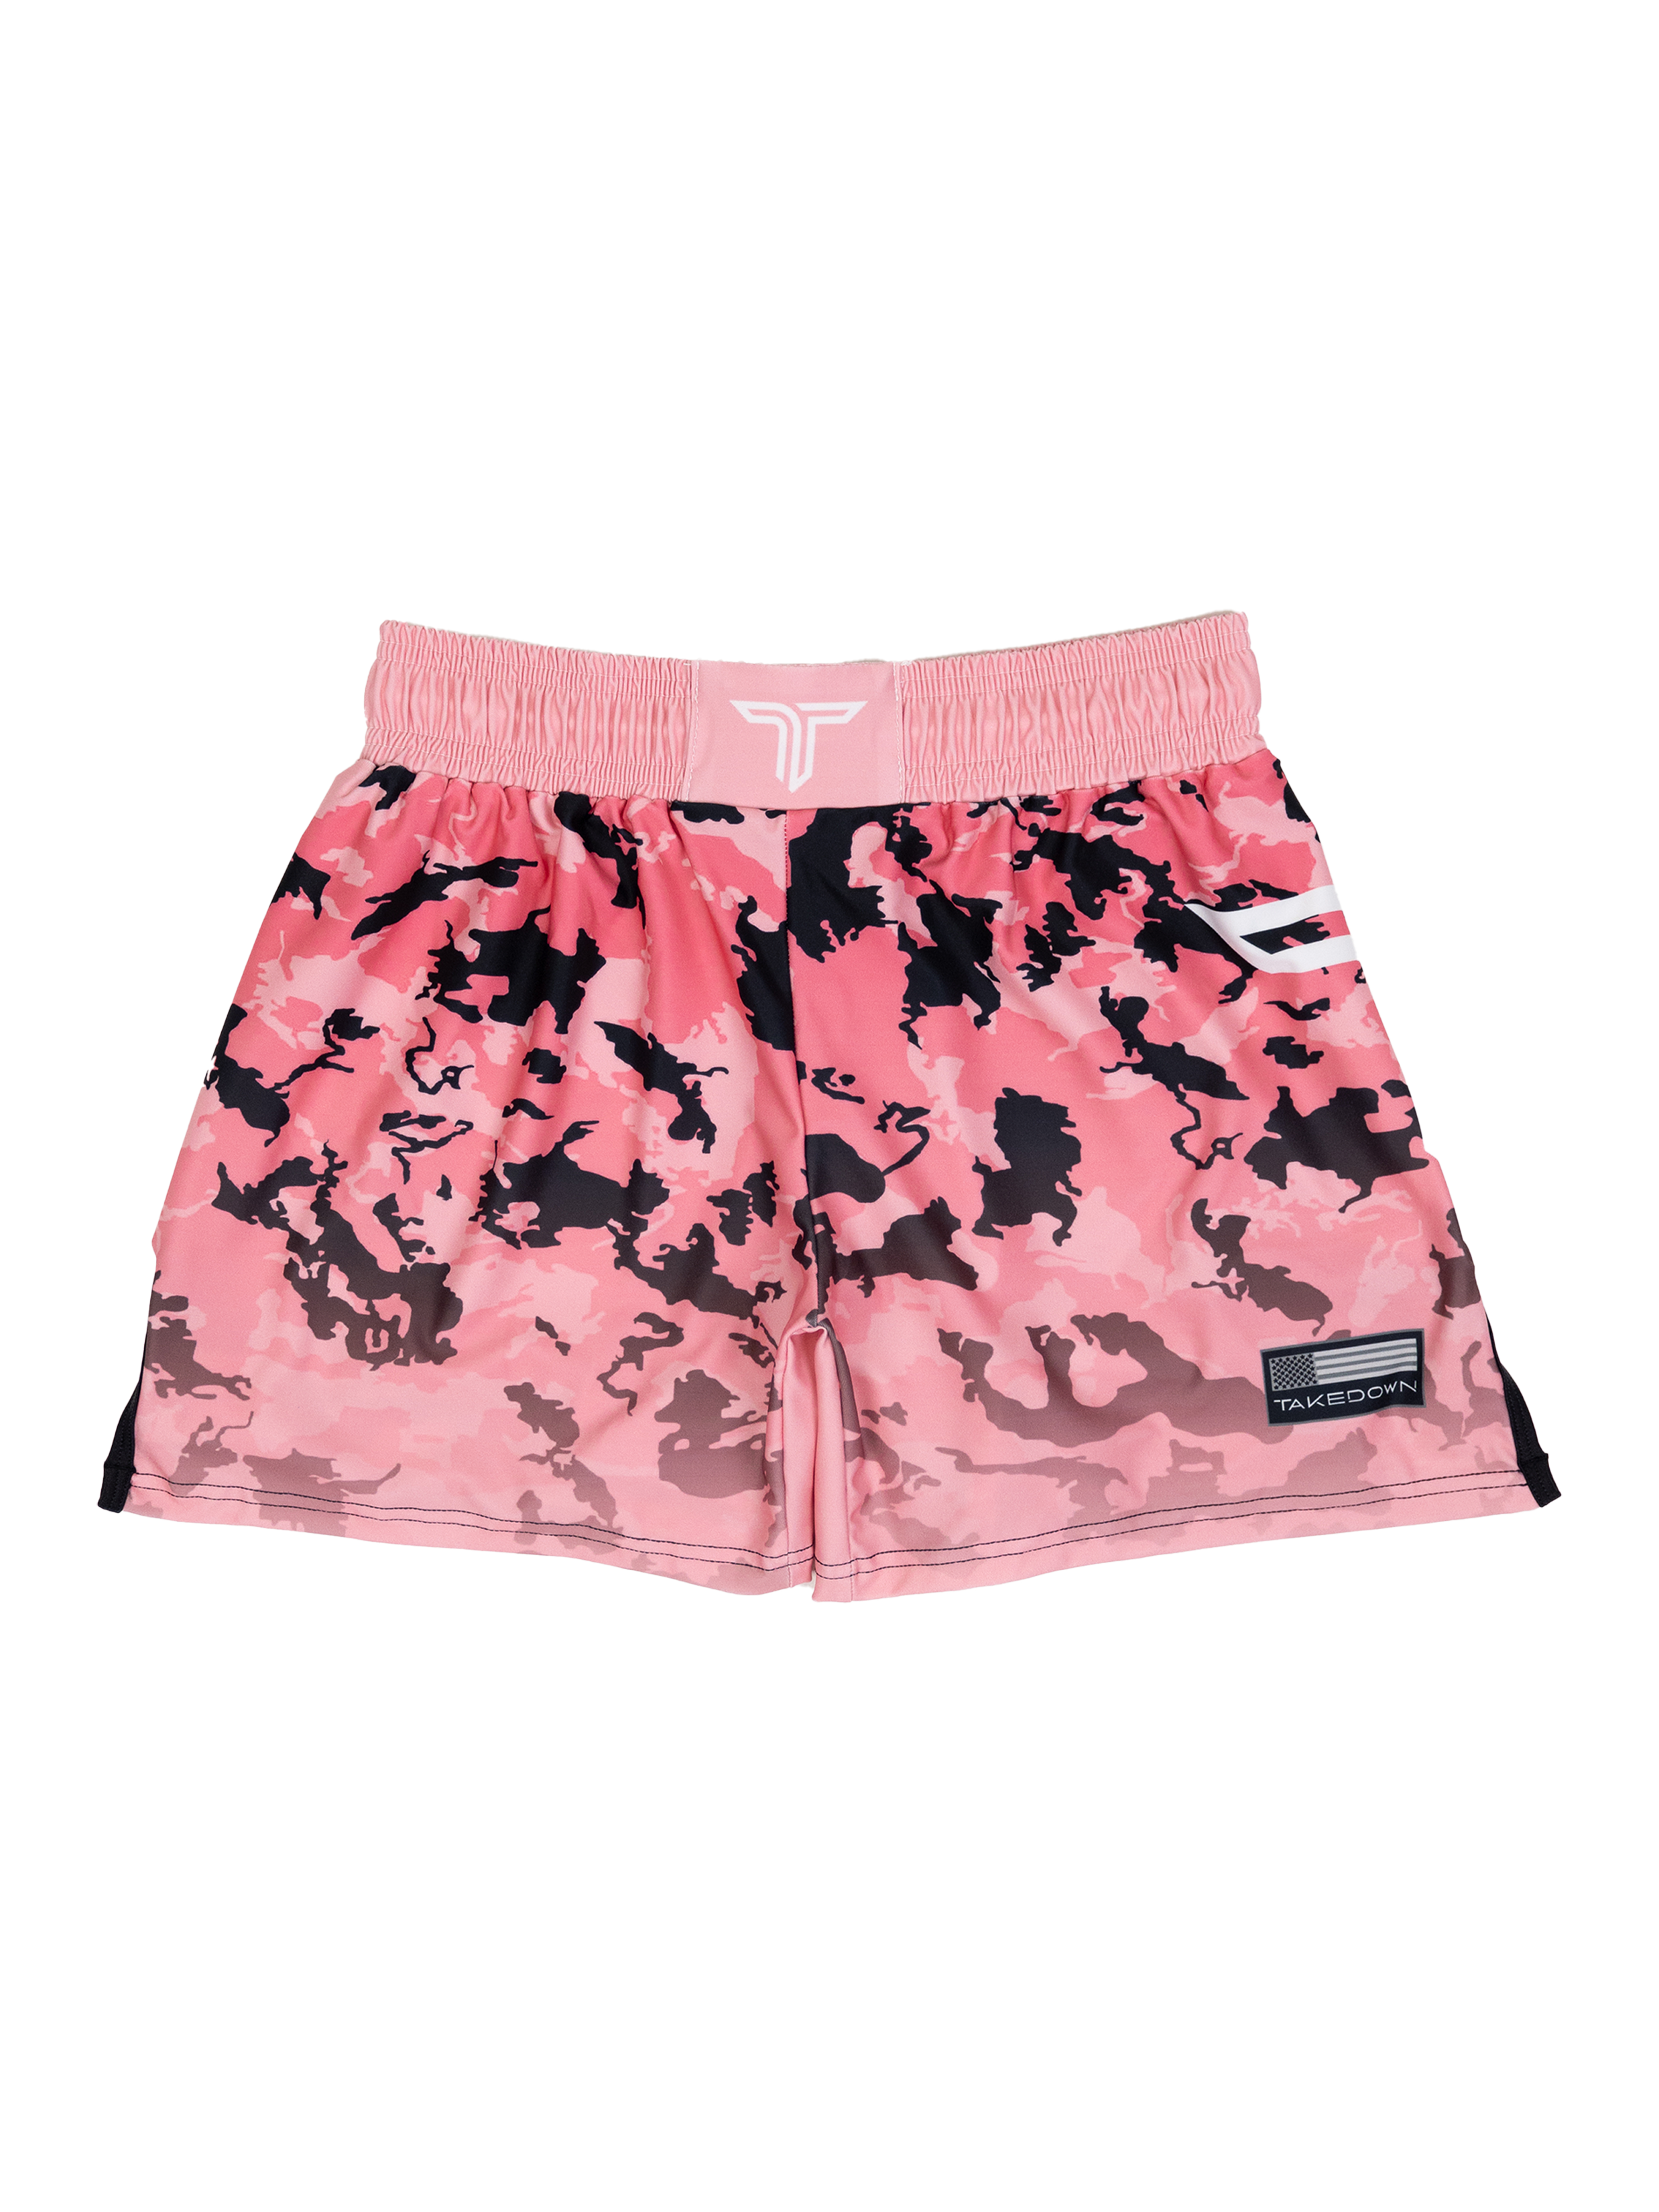 Particle Camo Fight Shorts - Malibu Pink (5